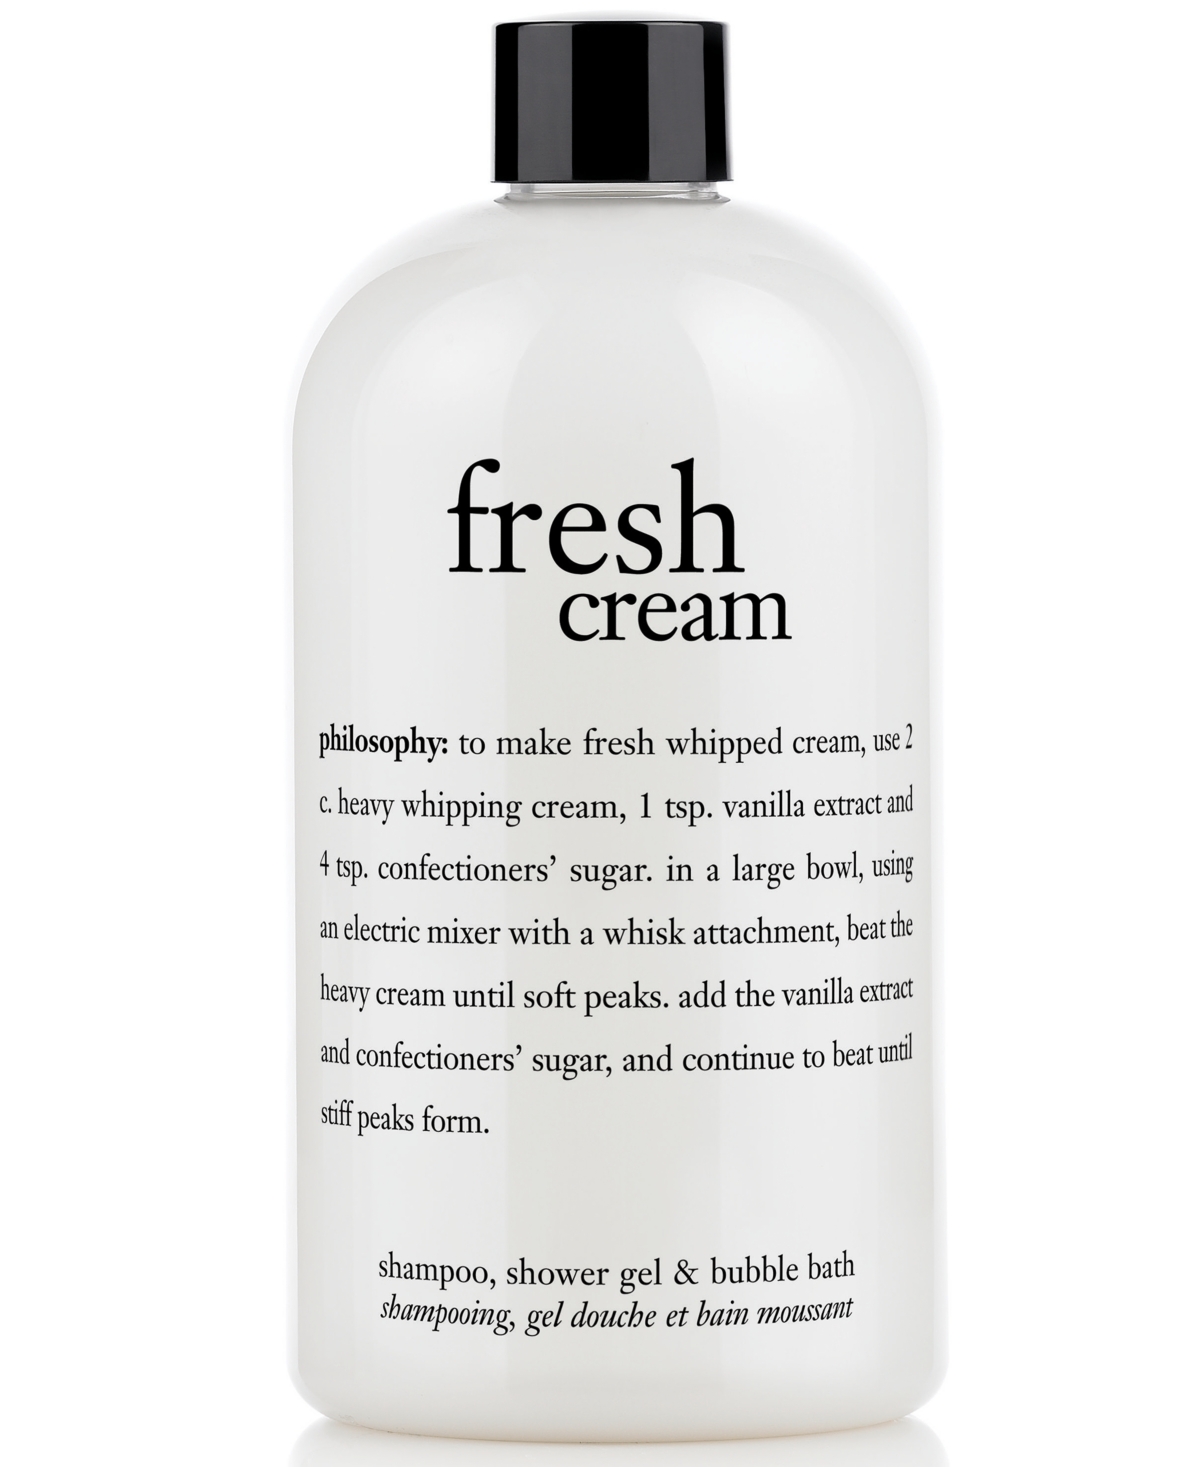 fresh cream 3-in-1 shampoo, shower gel and bubble bath, 16 oz